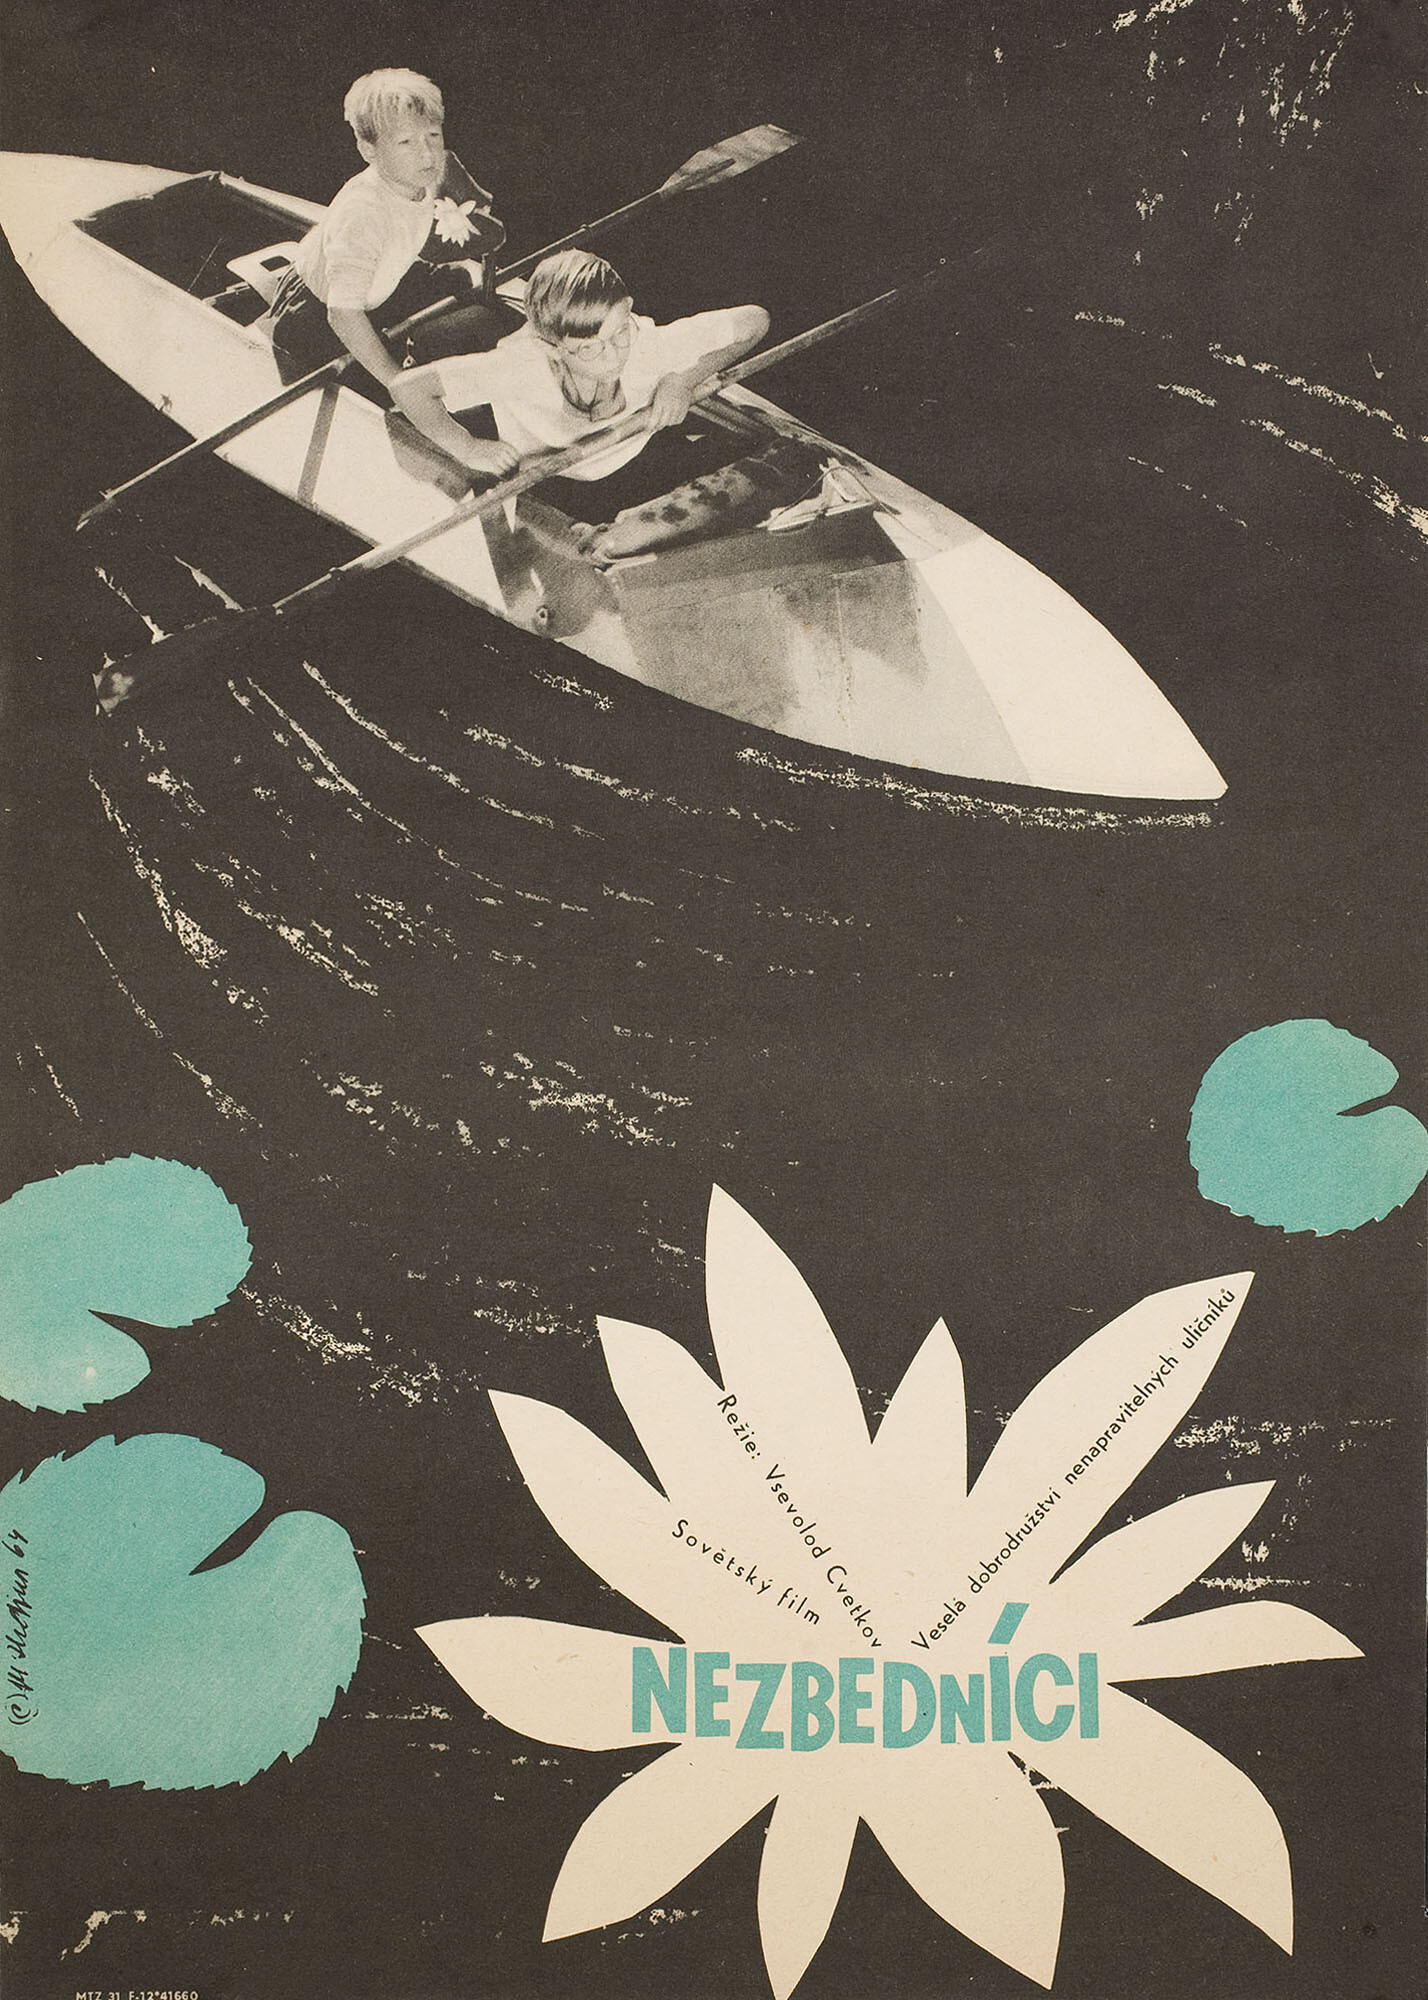 Трудные дети (режиссёр Всеволод Цветков, 1963), чехословацкий постер к фильму, автор Мирослав Хрдина, 1964 год